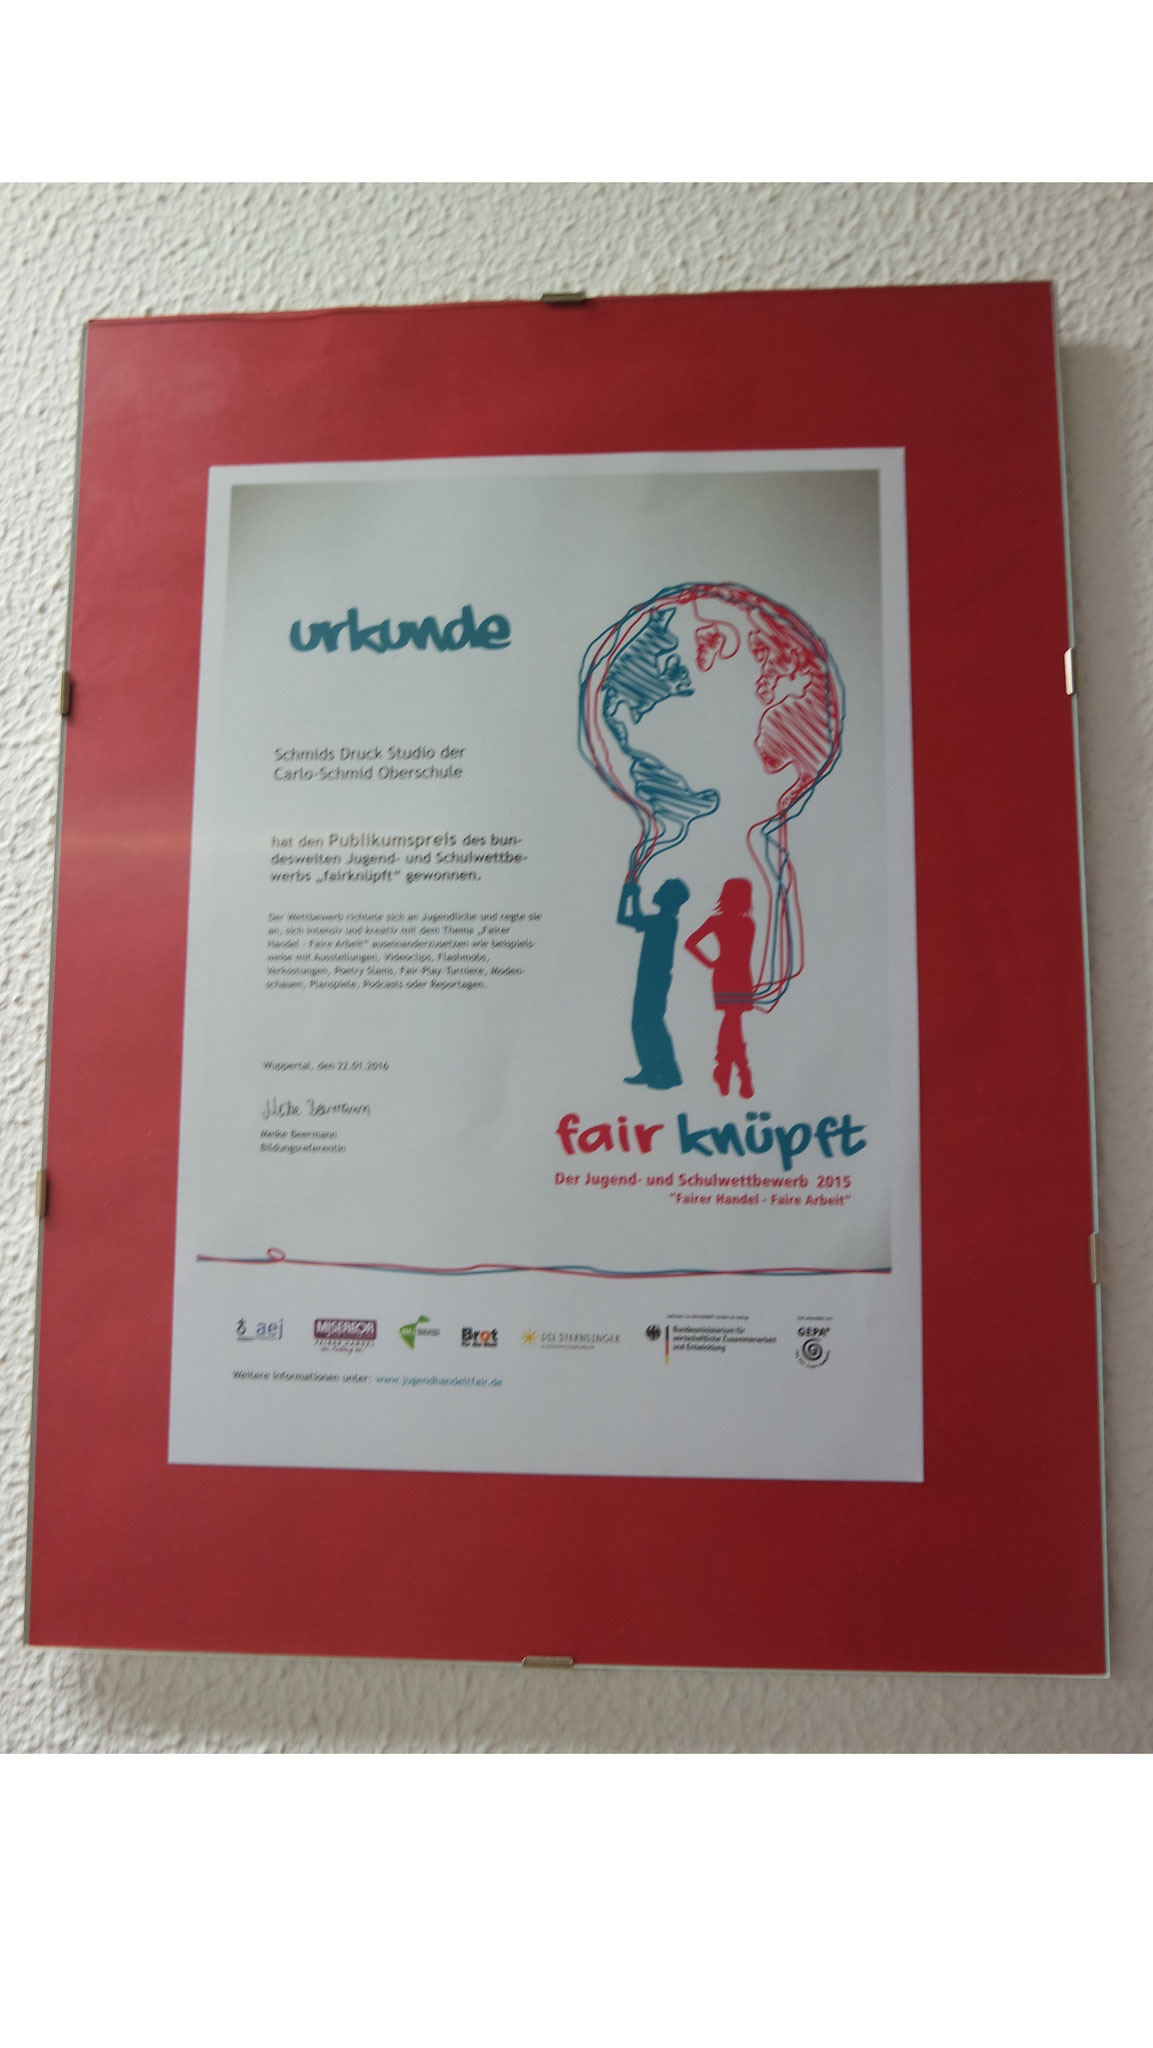 2015: Gewinner des bundesweiten Publikumspreises im wettbewerb "fairknüpft"